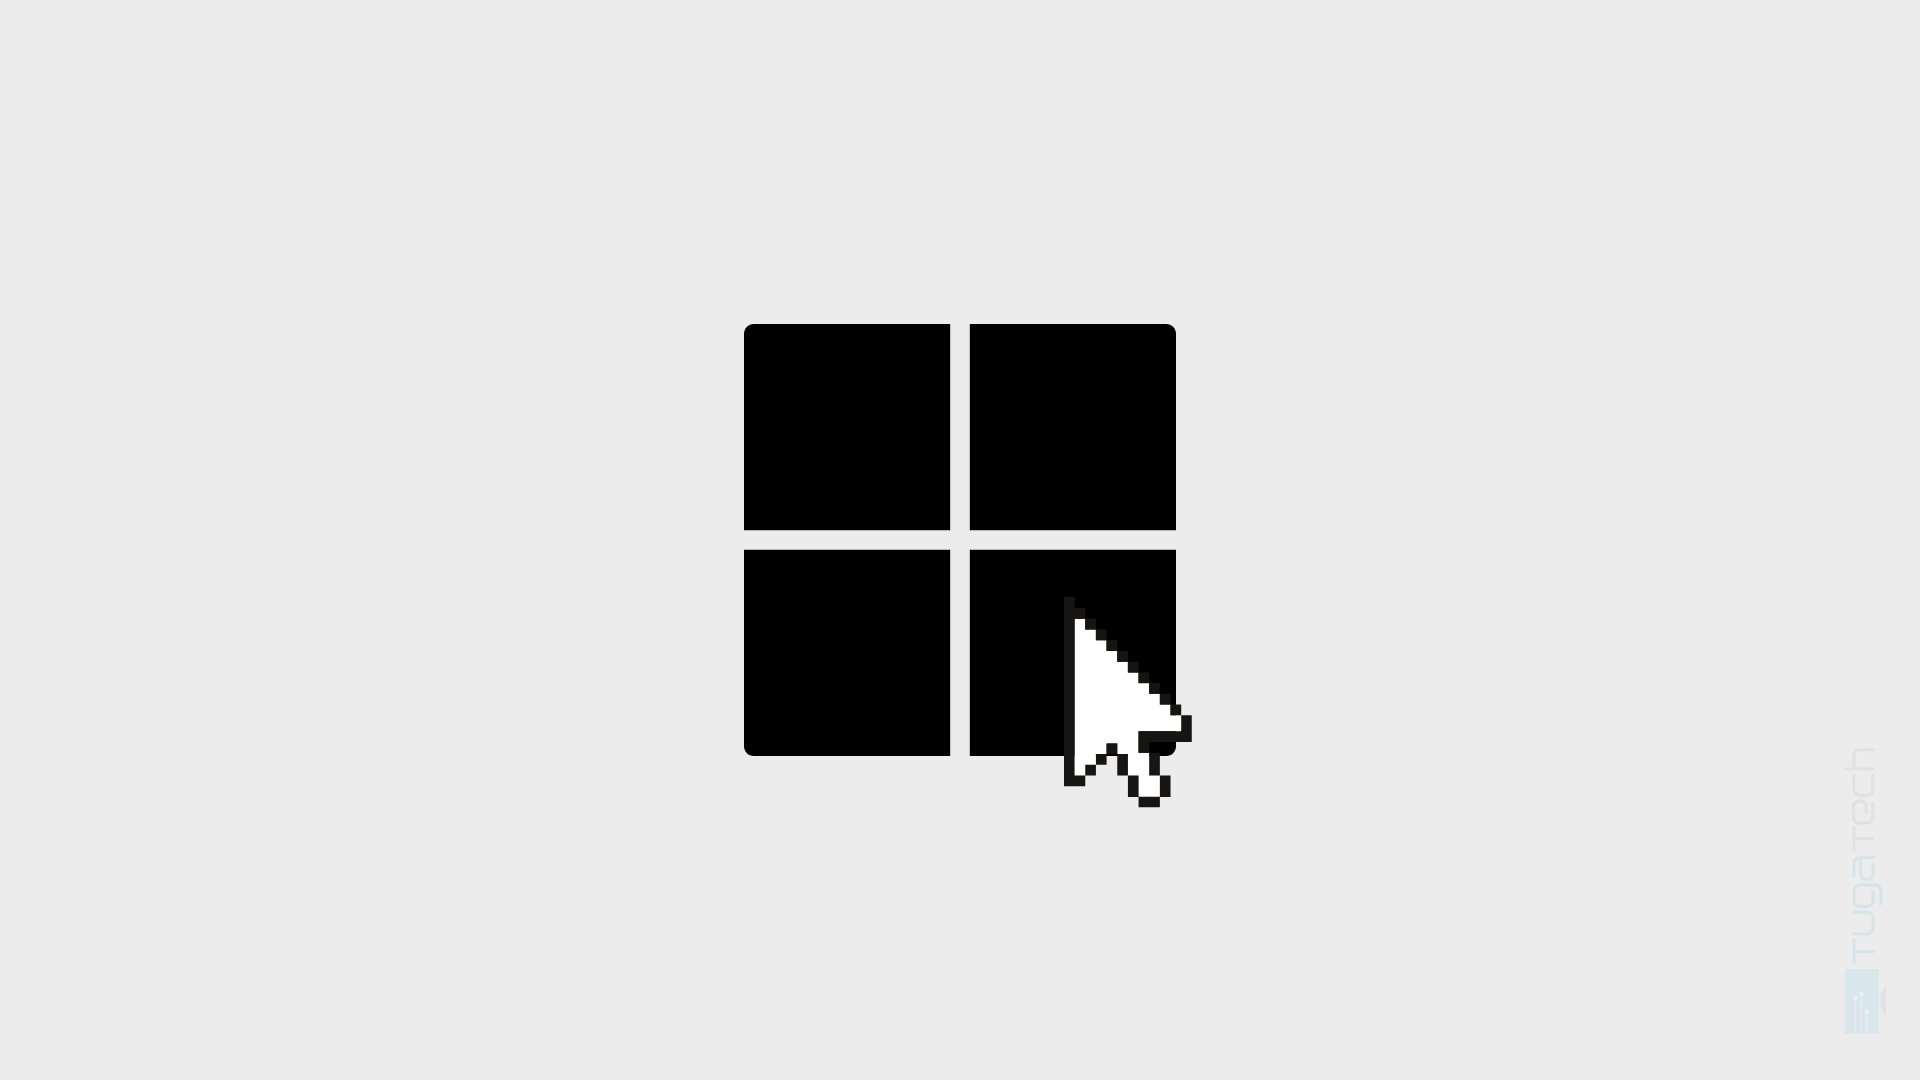 Windows com rato sobre o icone